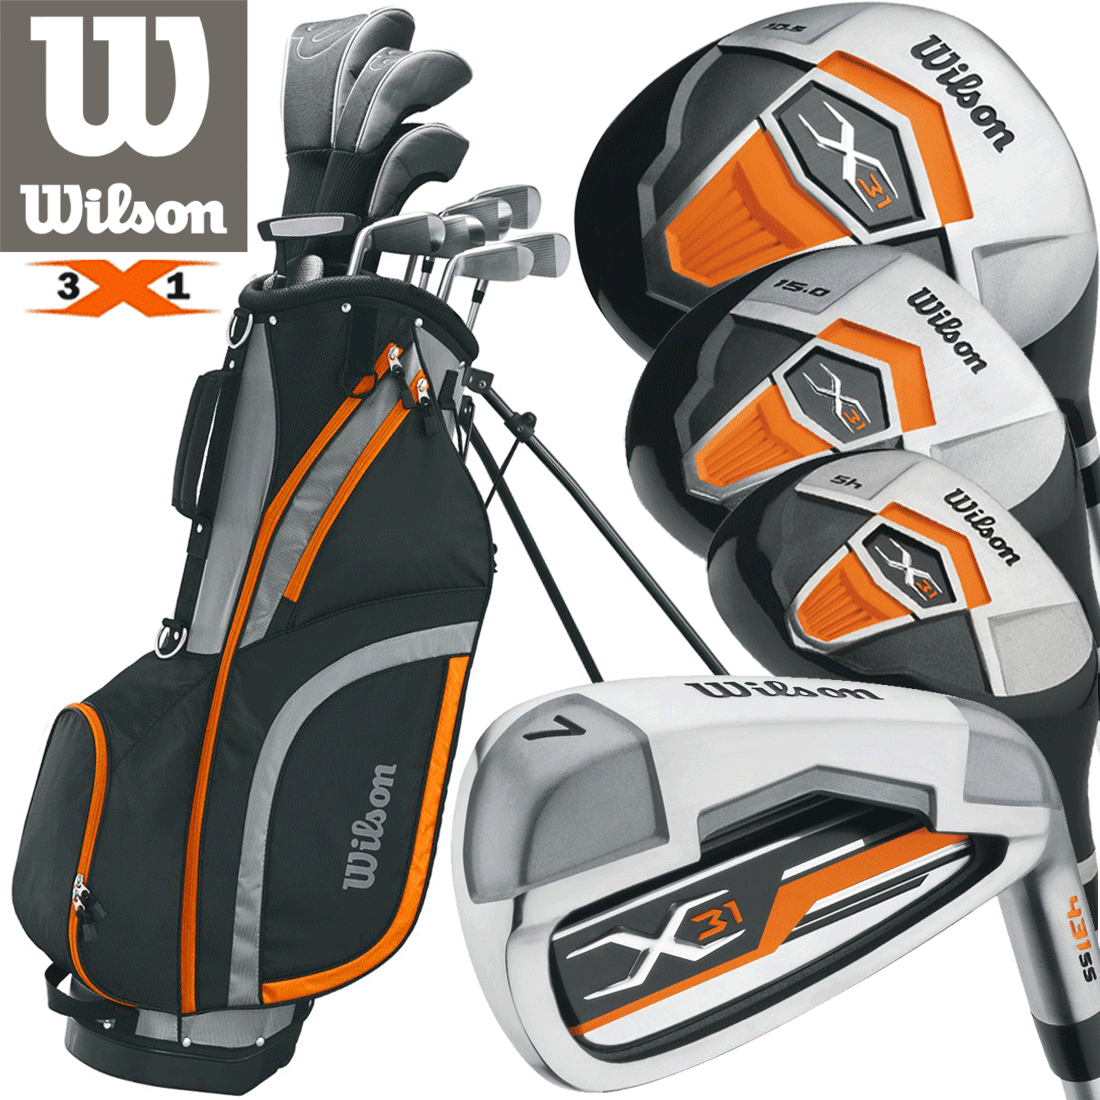 Wilson X31 Beginner Golf Set